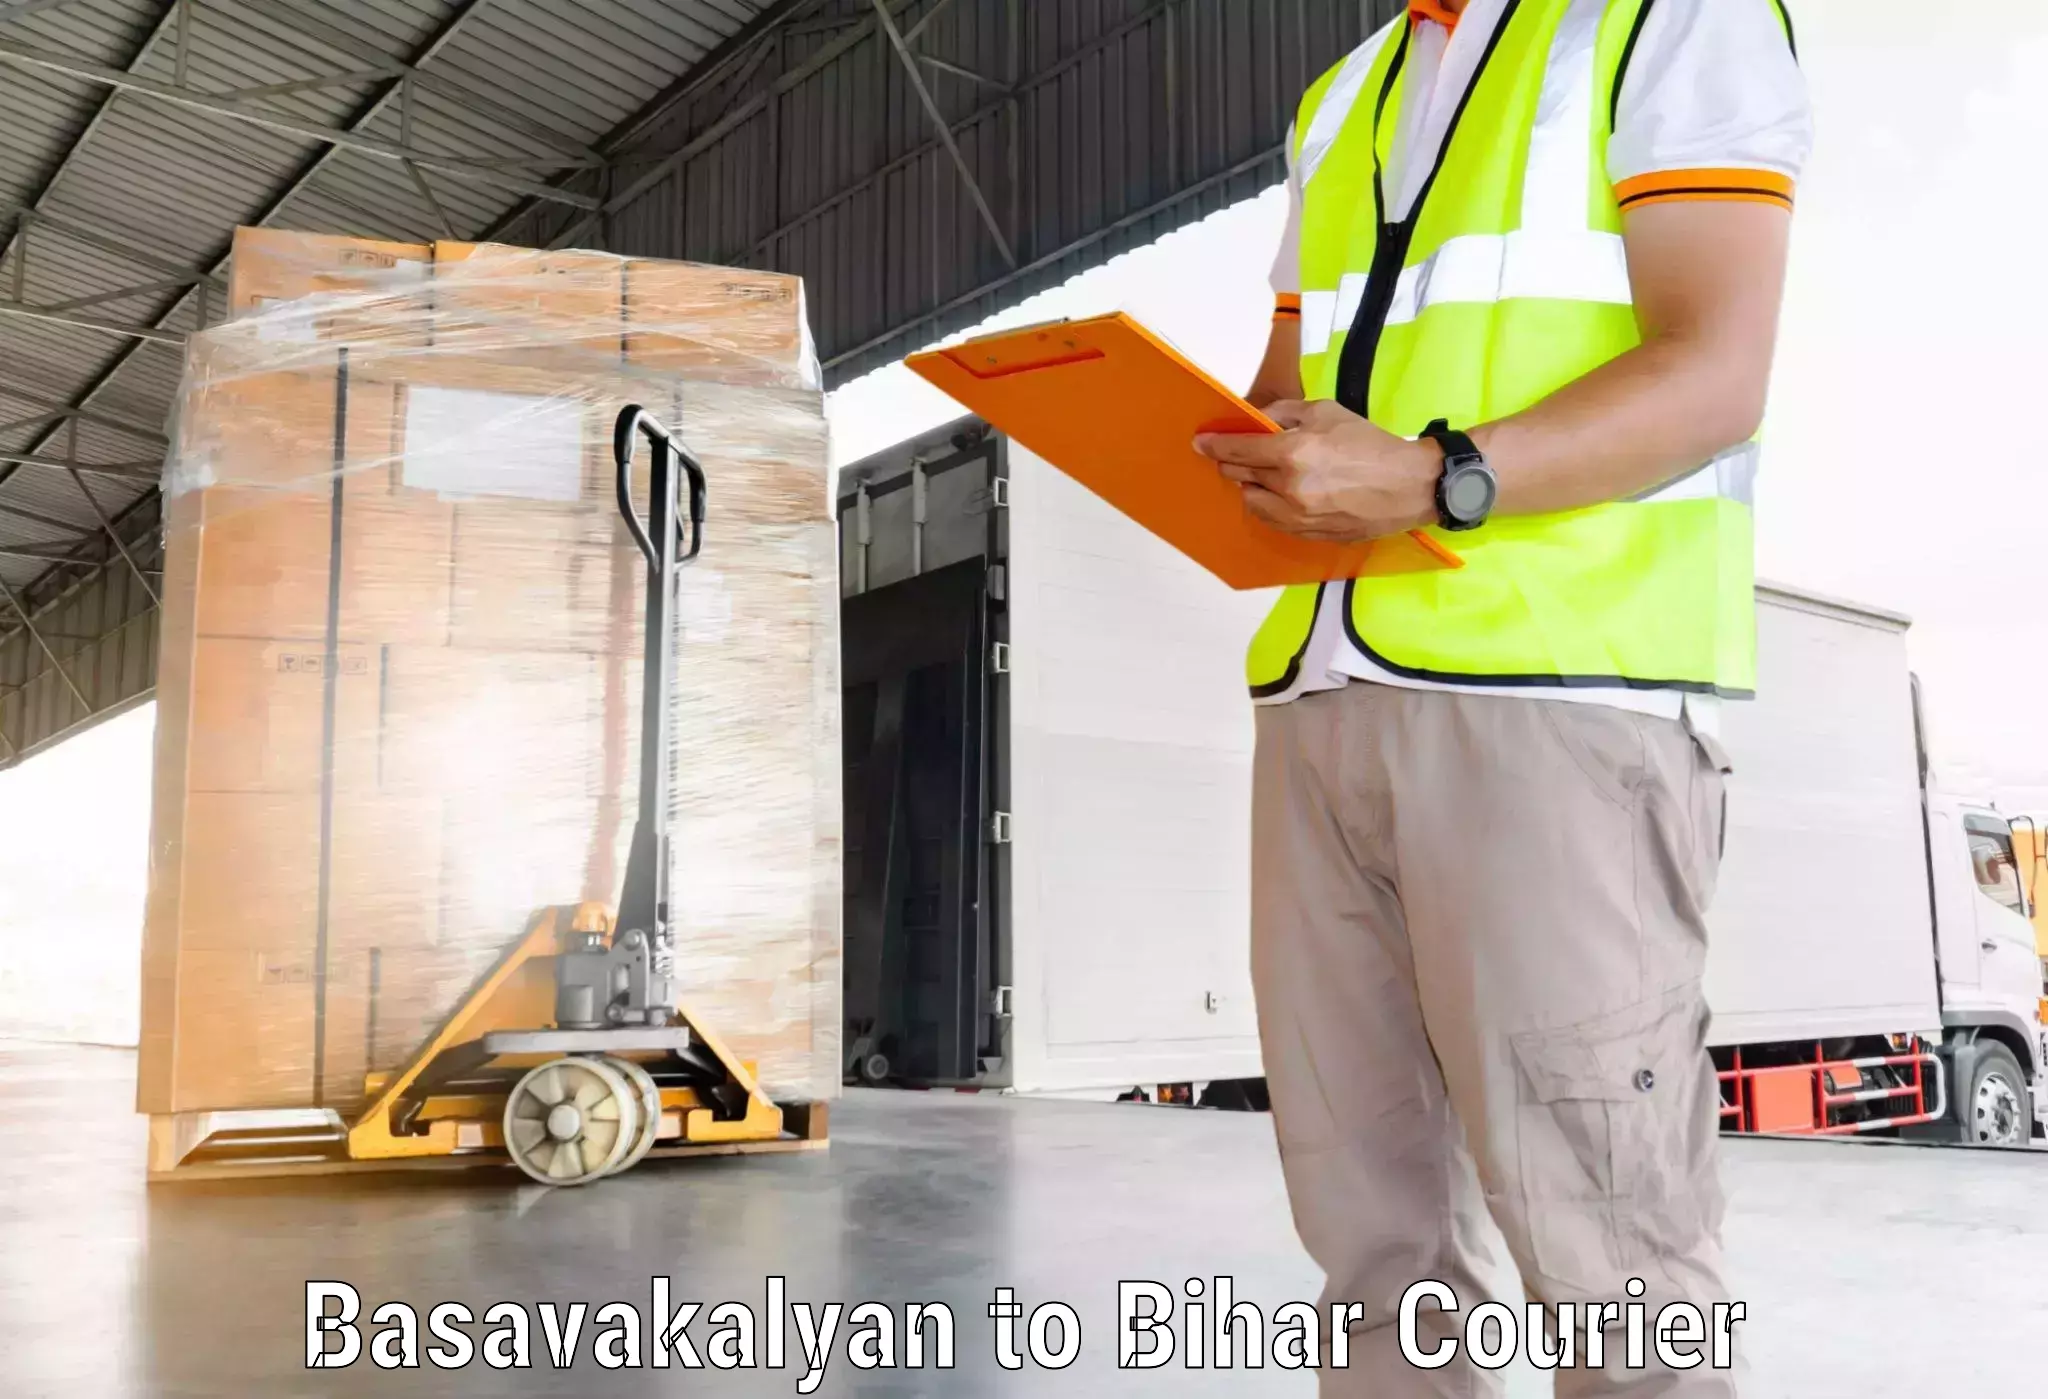 Global shipping solutions Basavakalyan to Pakribarwan